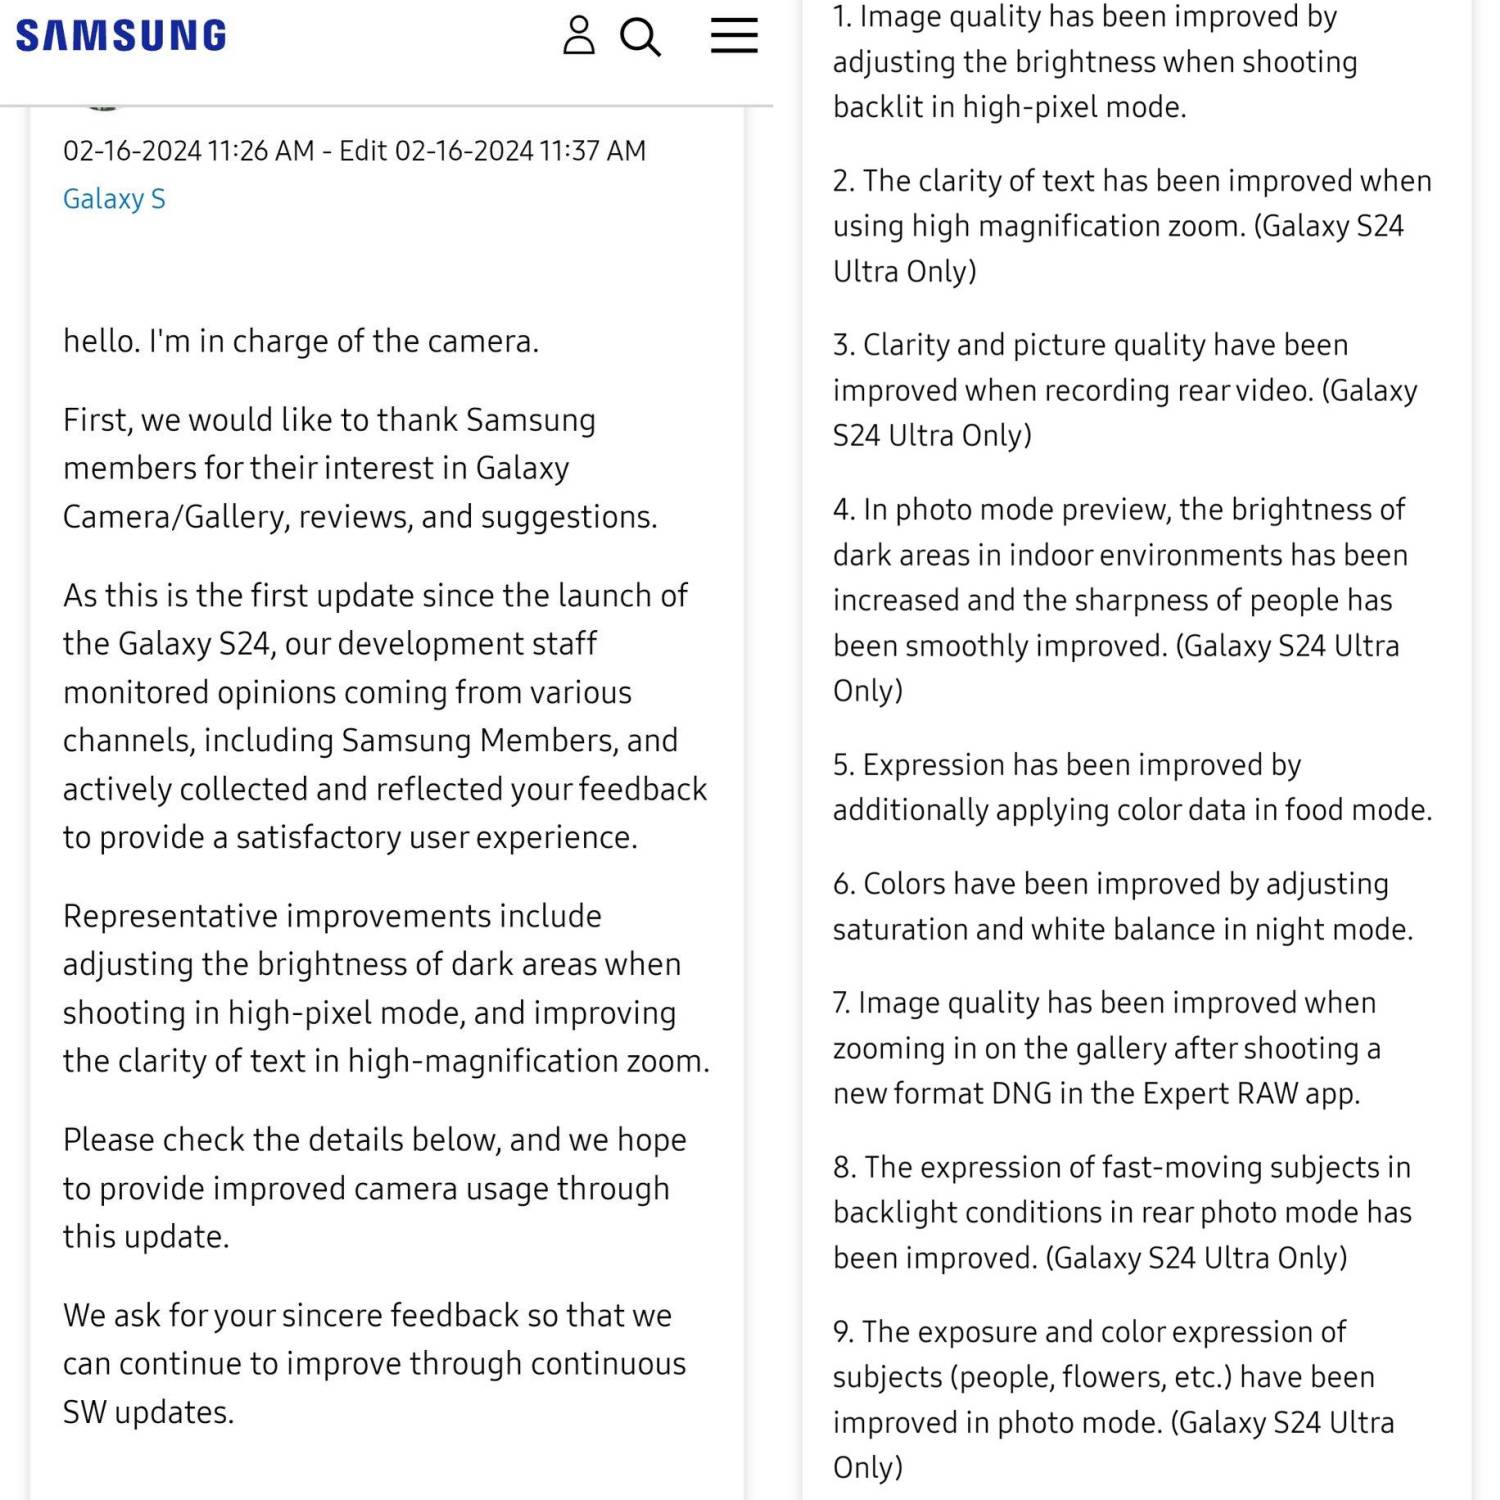 影片、夜景與變焦拍攝大改進：Samsung Galaxy S24 系列最新相機軟體九大升級揭曉！ 1